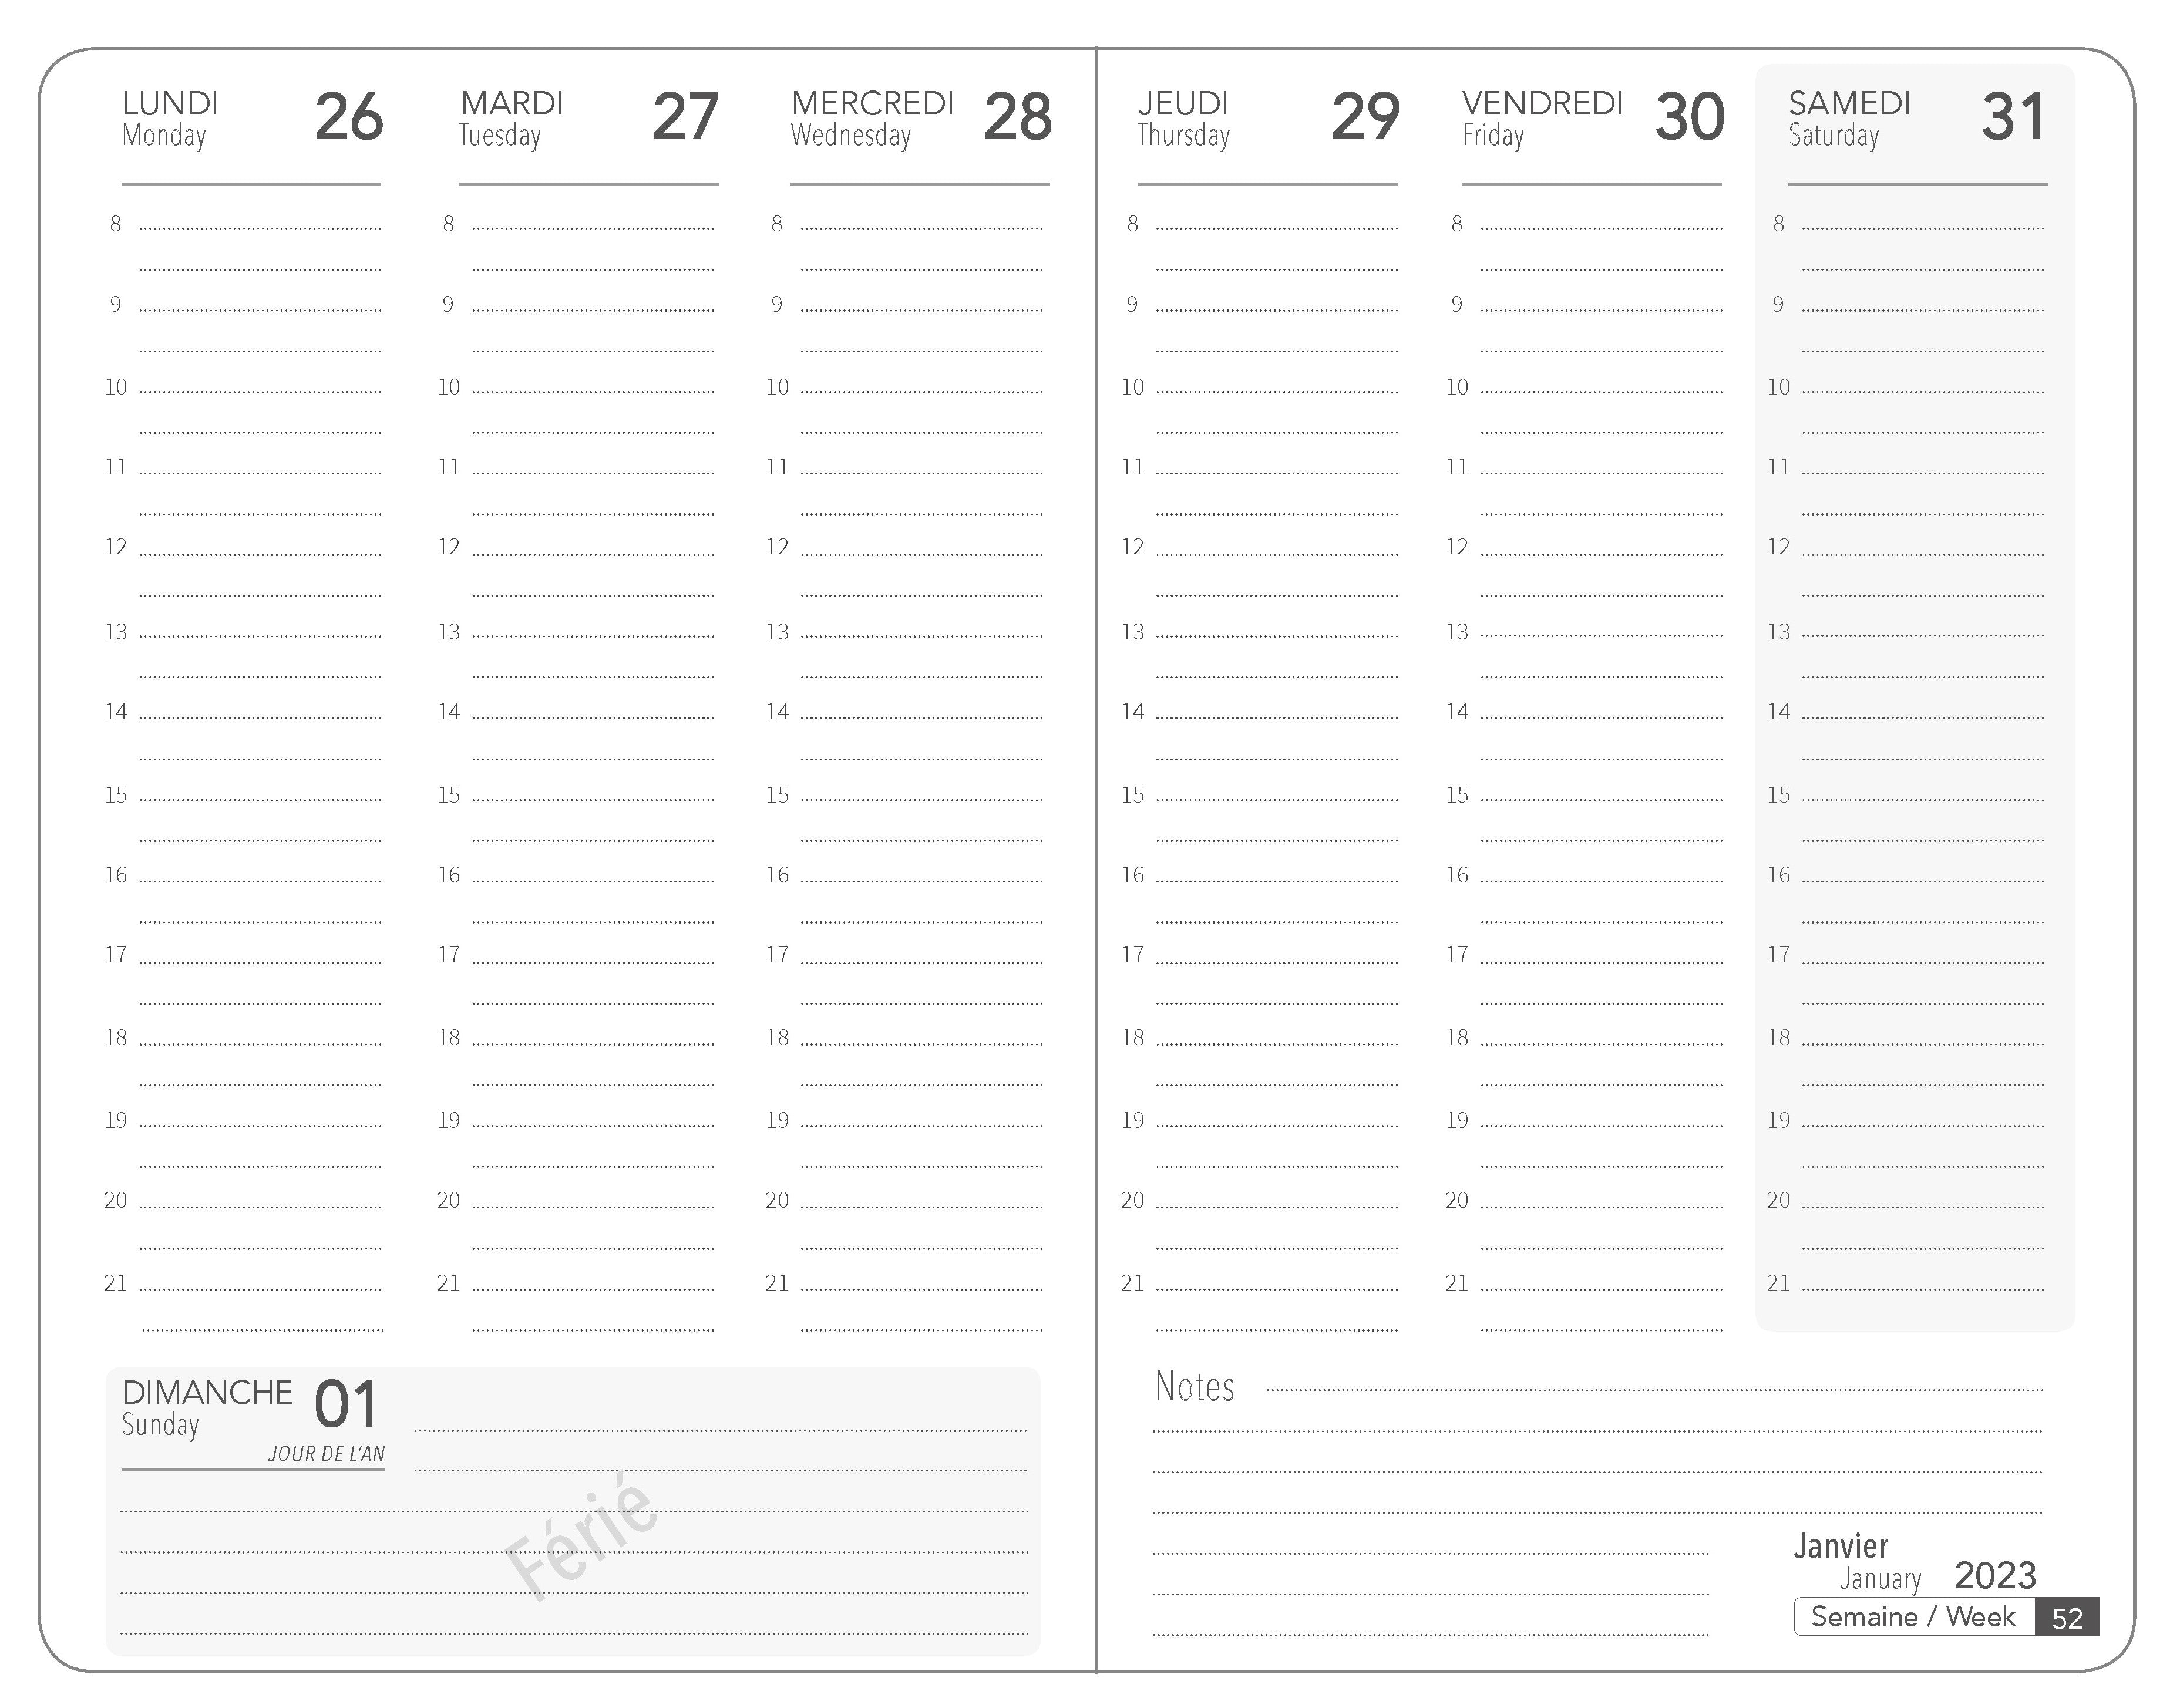 2023 Vincent van Gogh - Weekly Diary/Planner